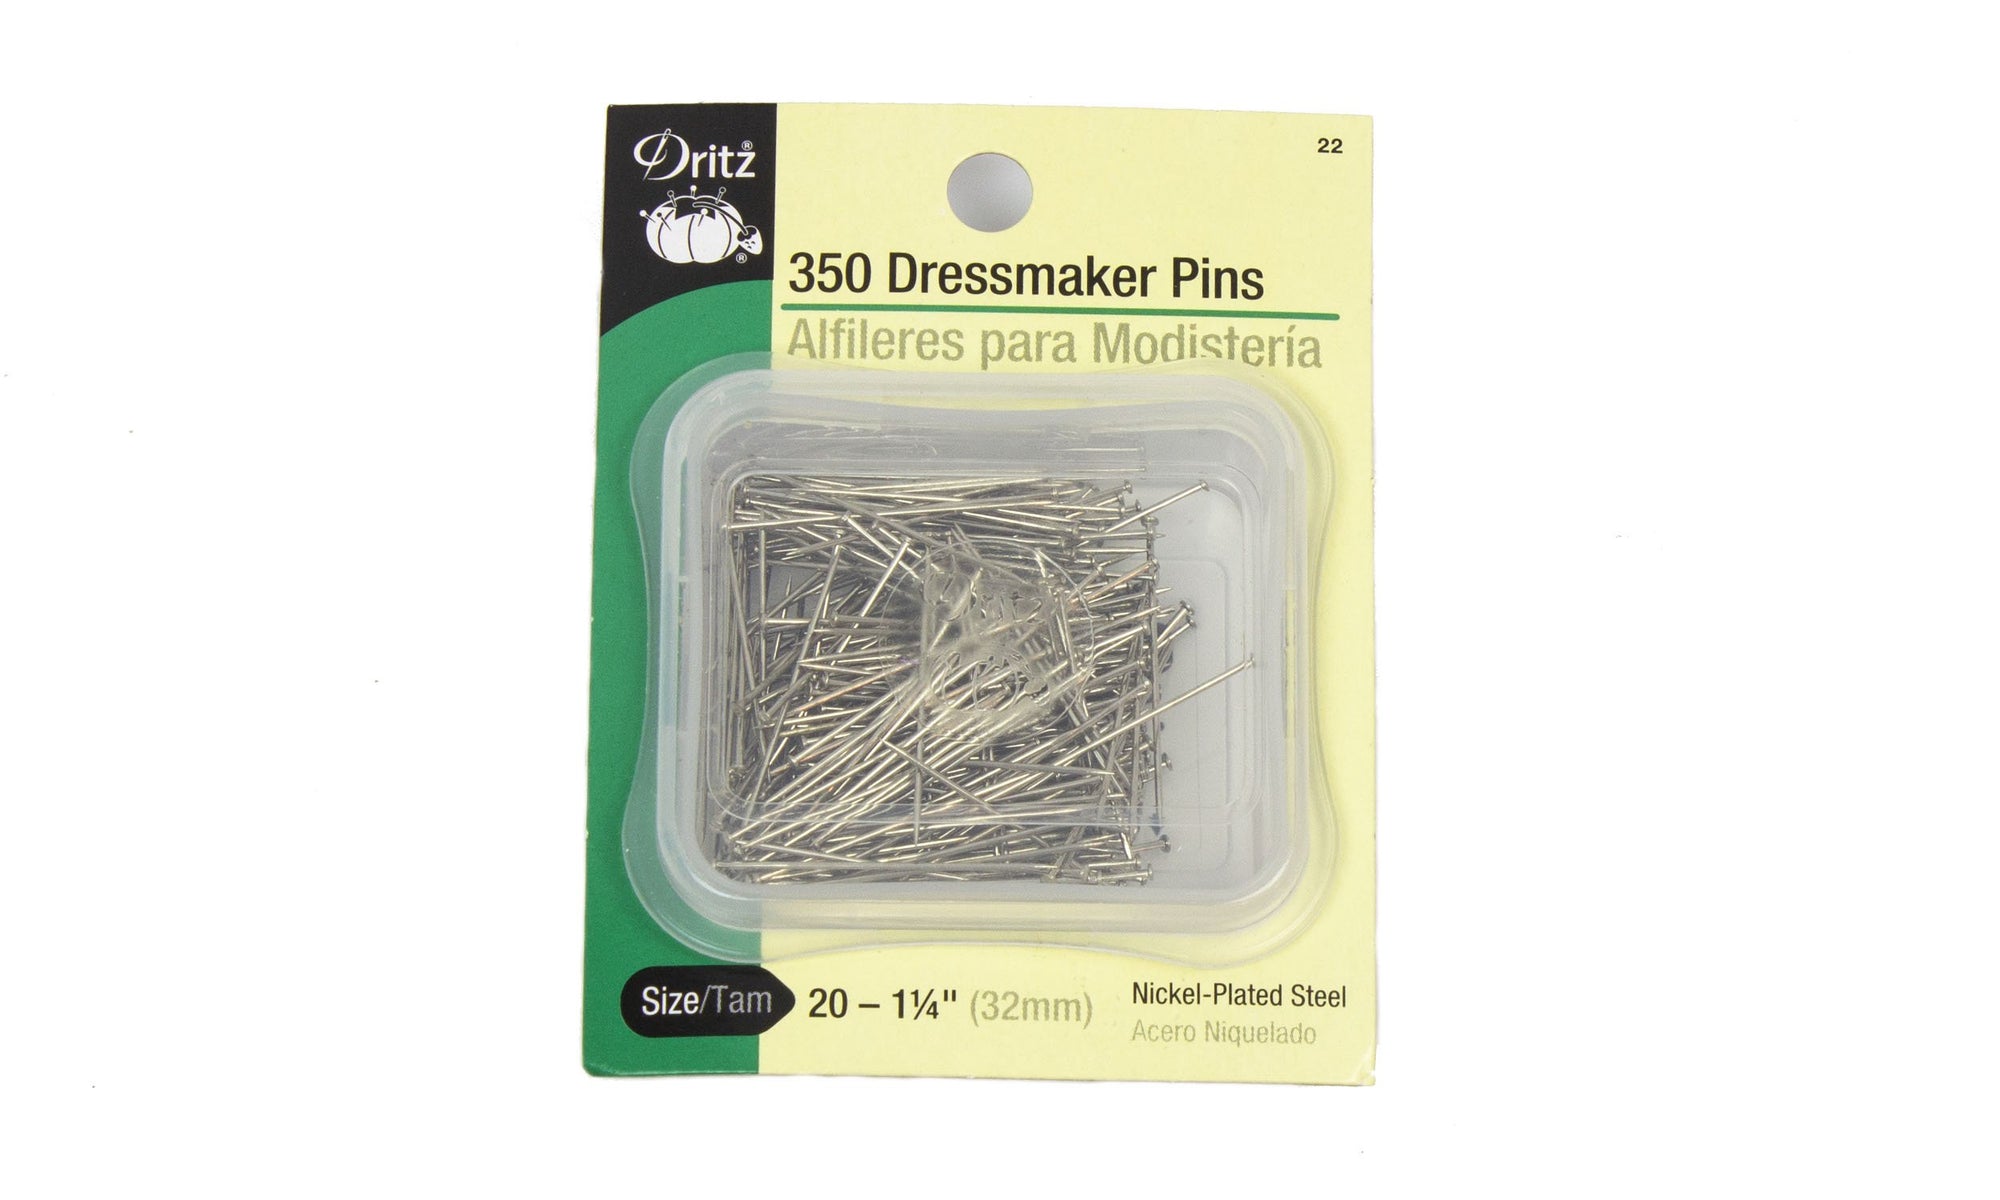 Dritz 750 Dressmaker Pins - Size 17